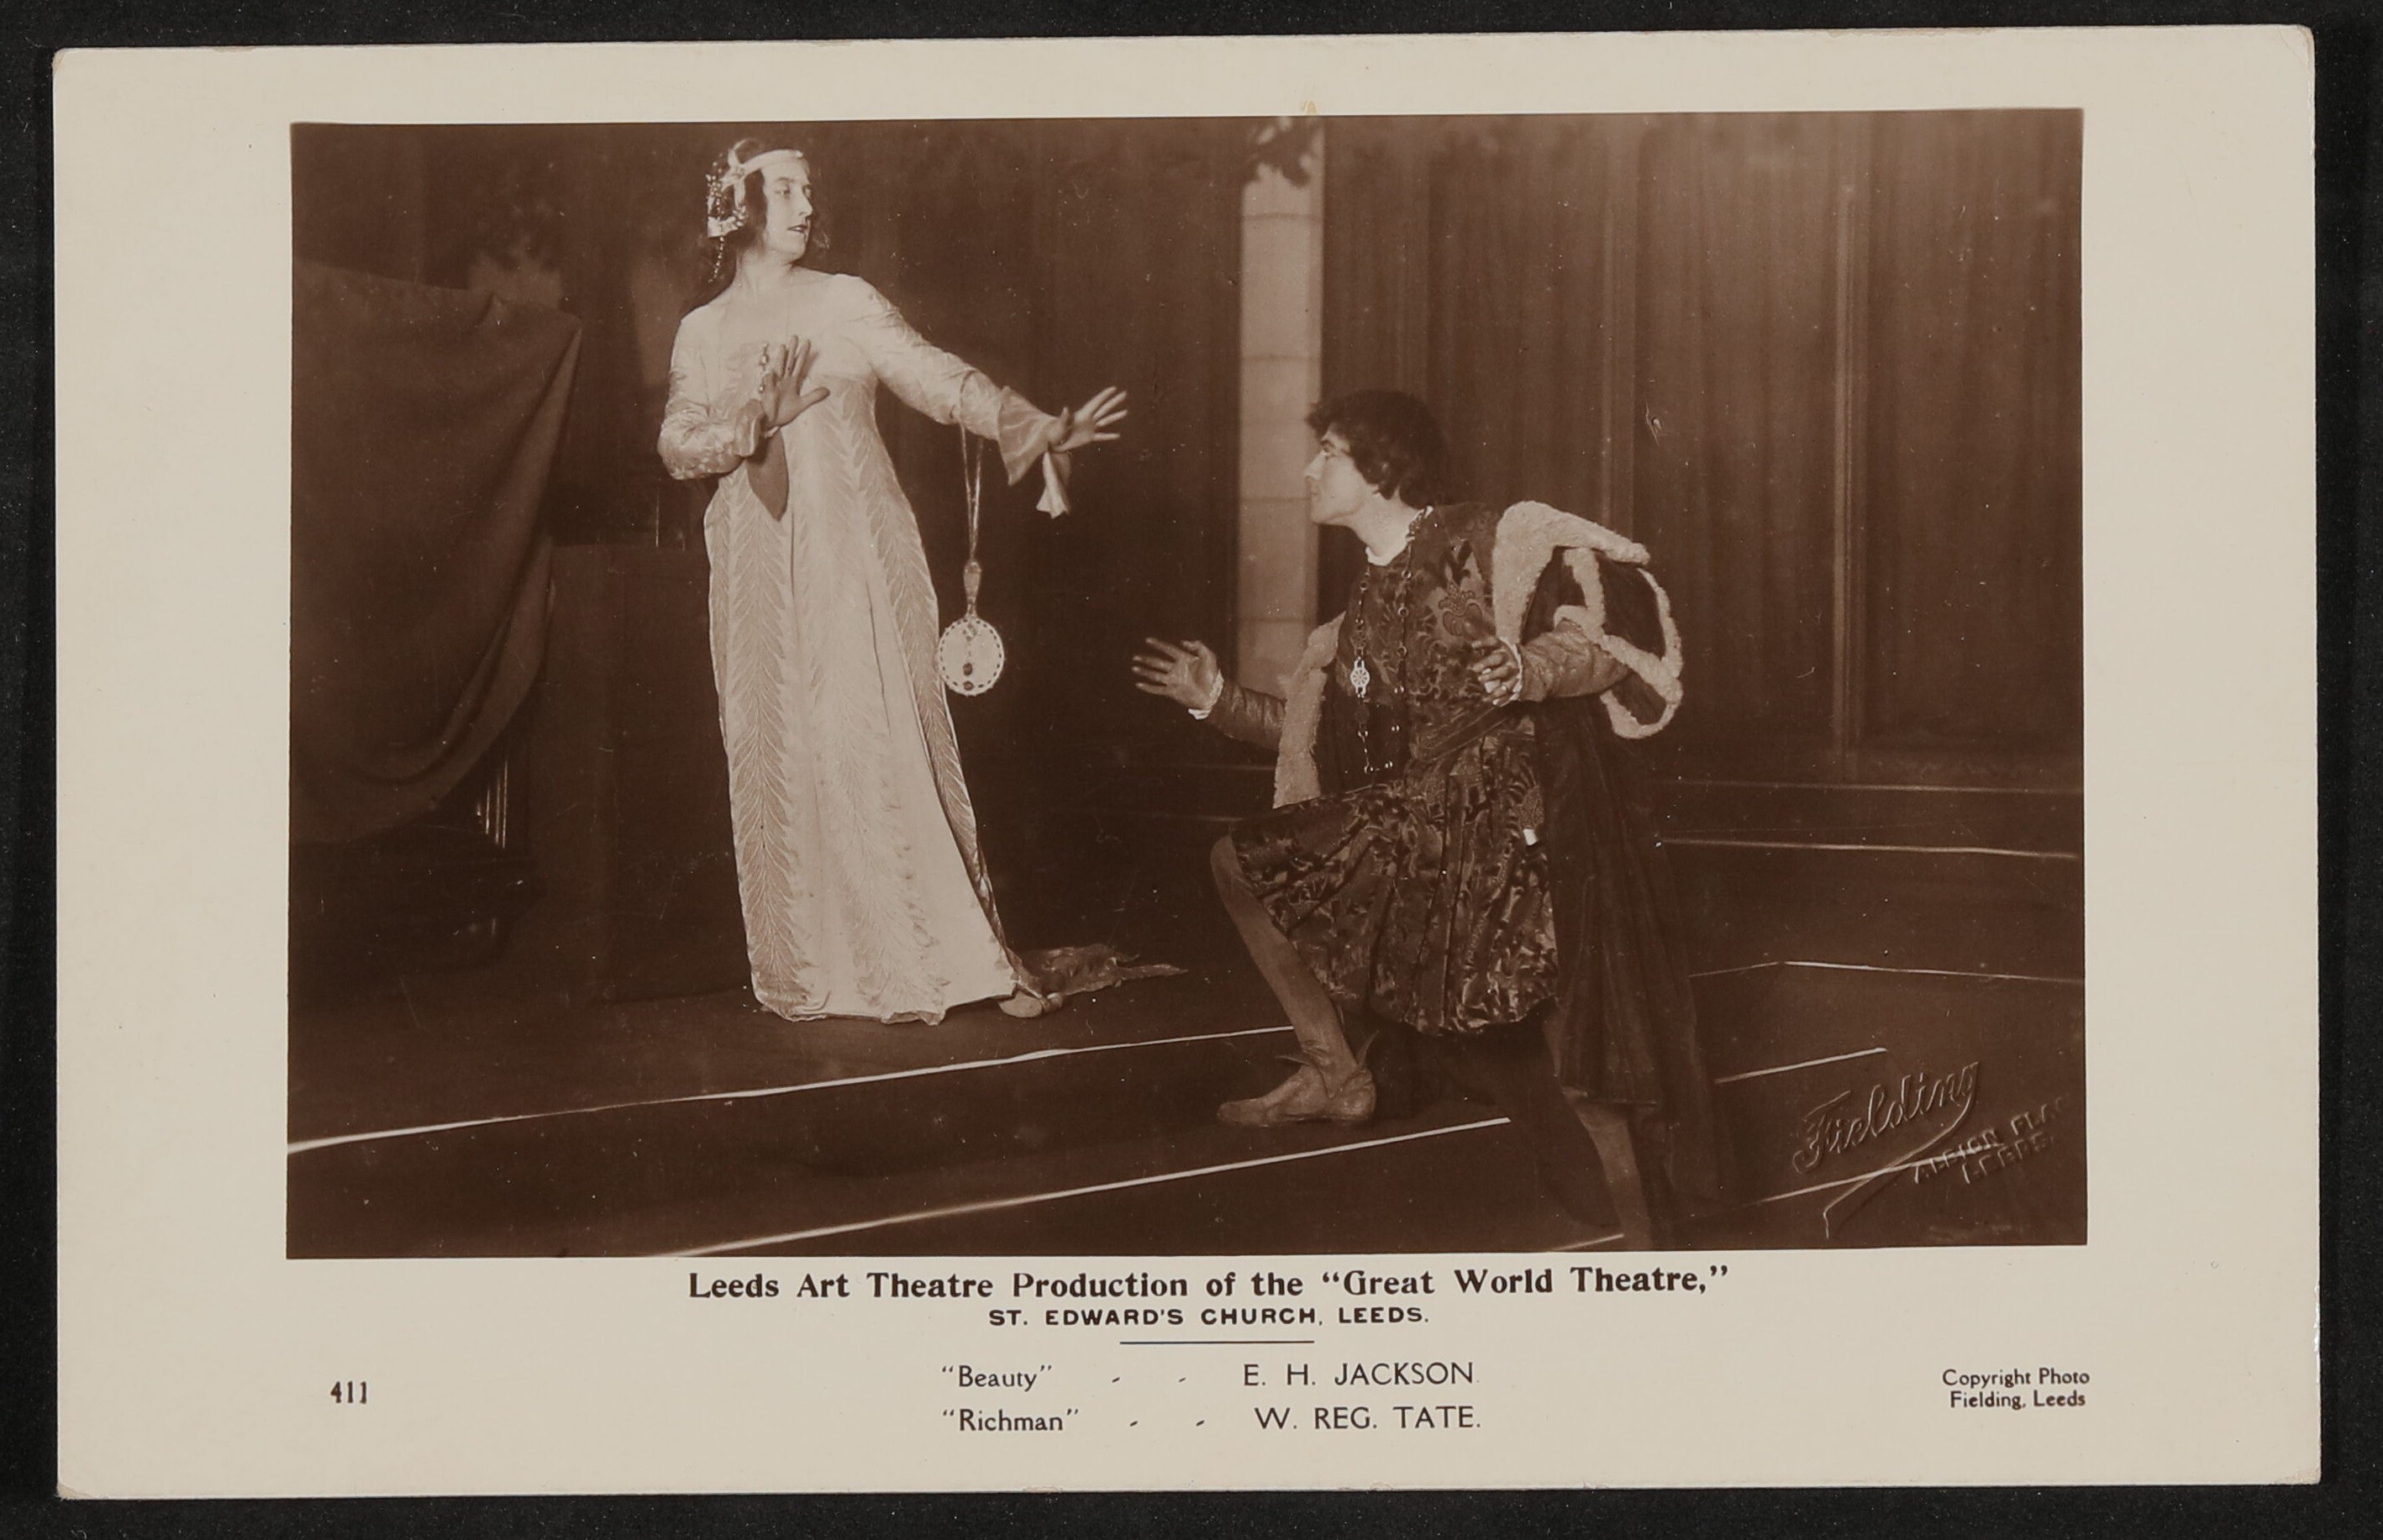 E. H. Jackson als "Beauty" (Schönheit) und W. Reg. Tate als "Richman" (Reicher) in Hofmannsthals "Great World Theatre" in Leeds (Freies Deutsches Hochstift / Frankfurter Goethe-Museum CC BY-NC-SA)